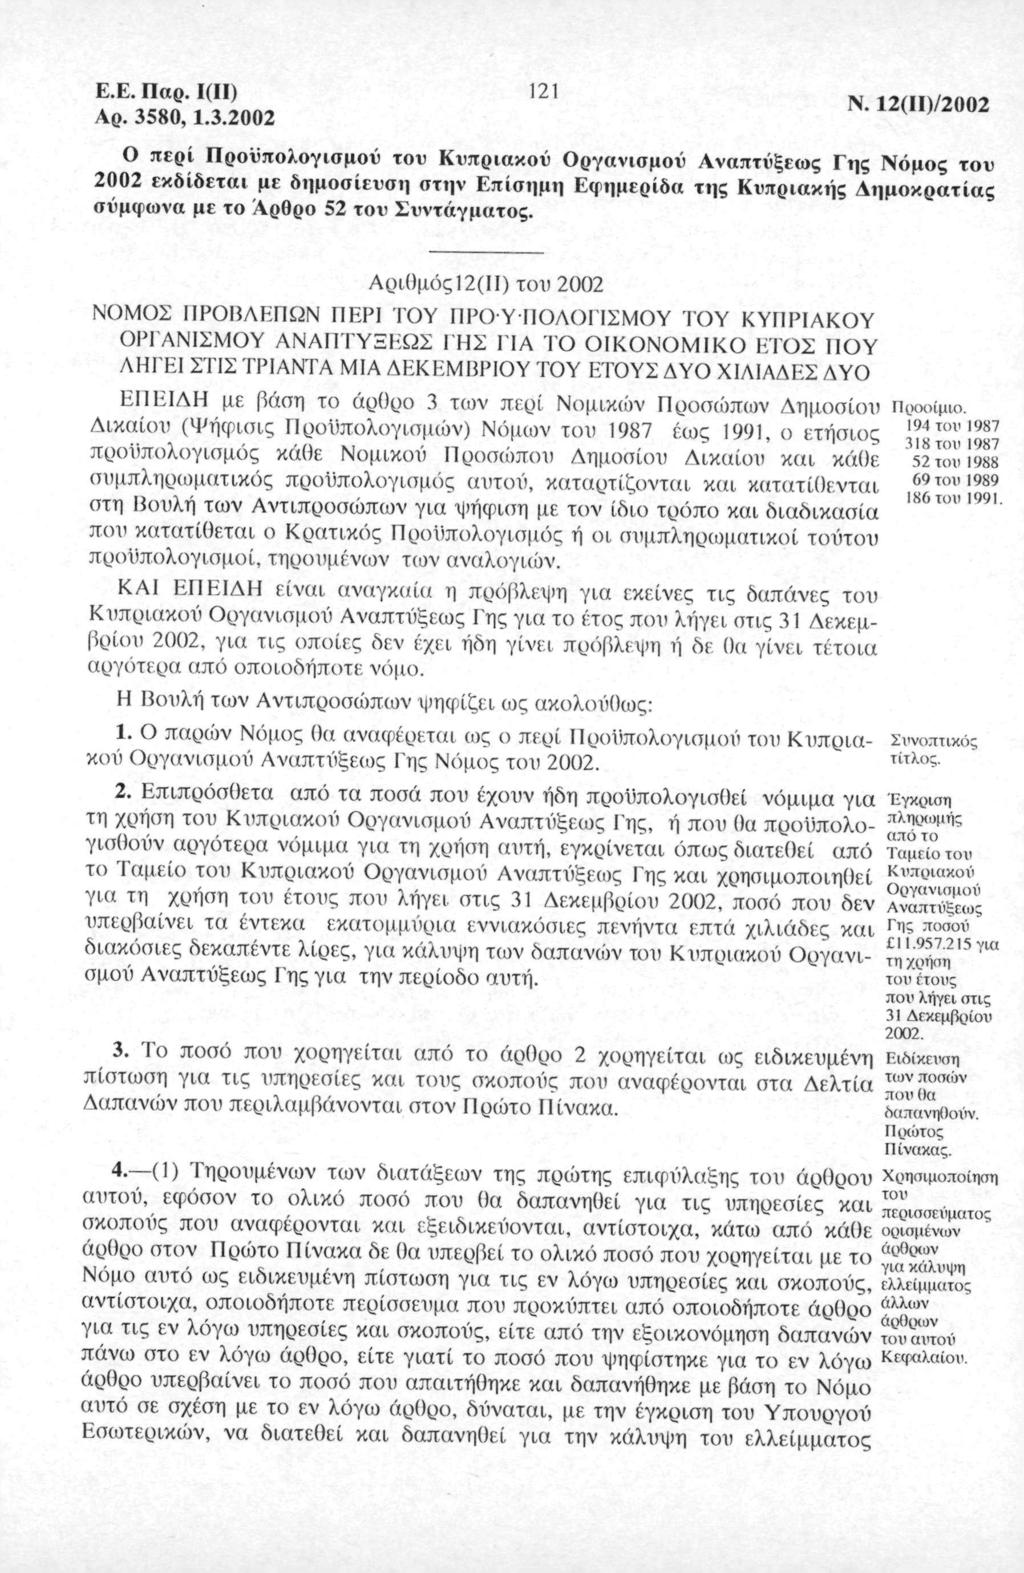 E.E. Πρ. I(II) Αρ. 58, 1.. 11 *' 1 ID/ ^11/υυ περί Πρϋπλγισμί) τυ Κυπρικύ ργνισμί) Ανπτύξες Γης Νόμς τυ εκδίδετι με δημσίευση στην Επίσημη Εφημερίδ της Κυπρικής Αημκρτίς σύμφν με τ Αρθρ 5 τυ Συντάγμτς.